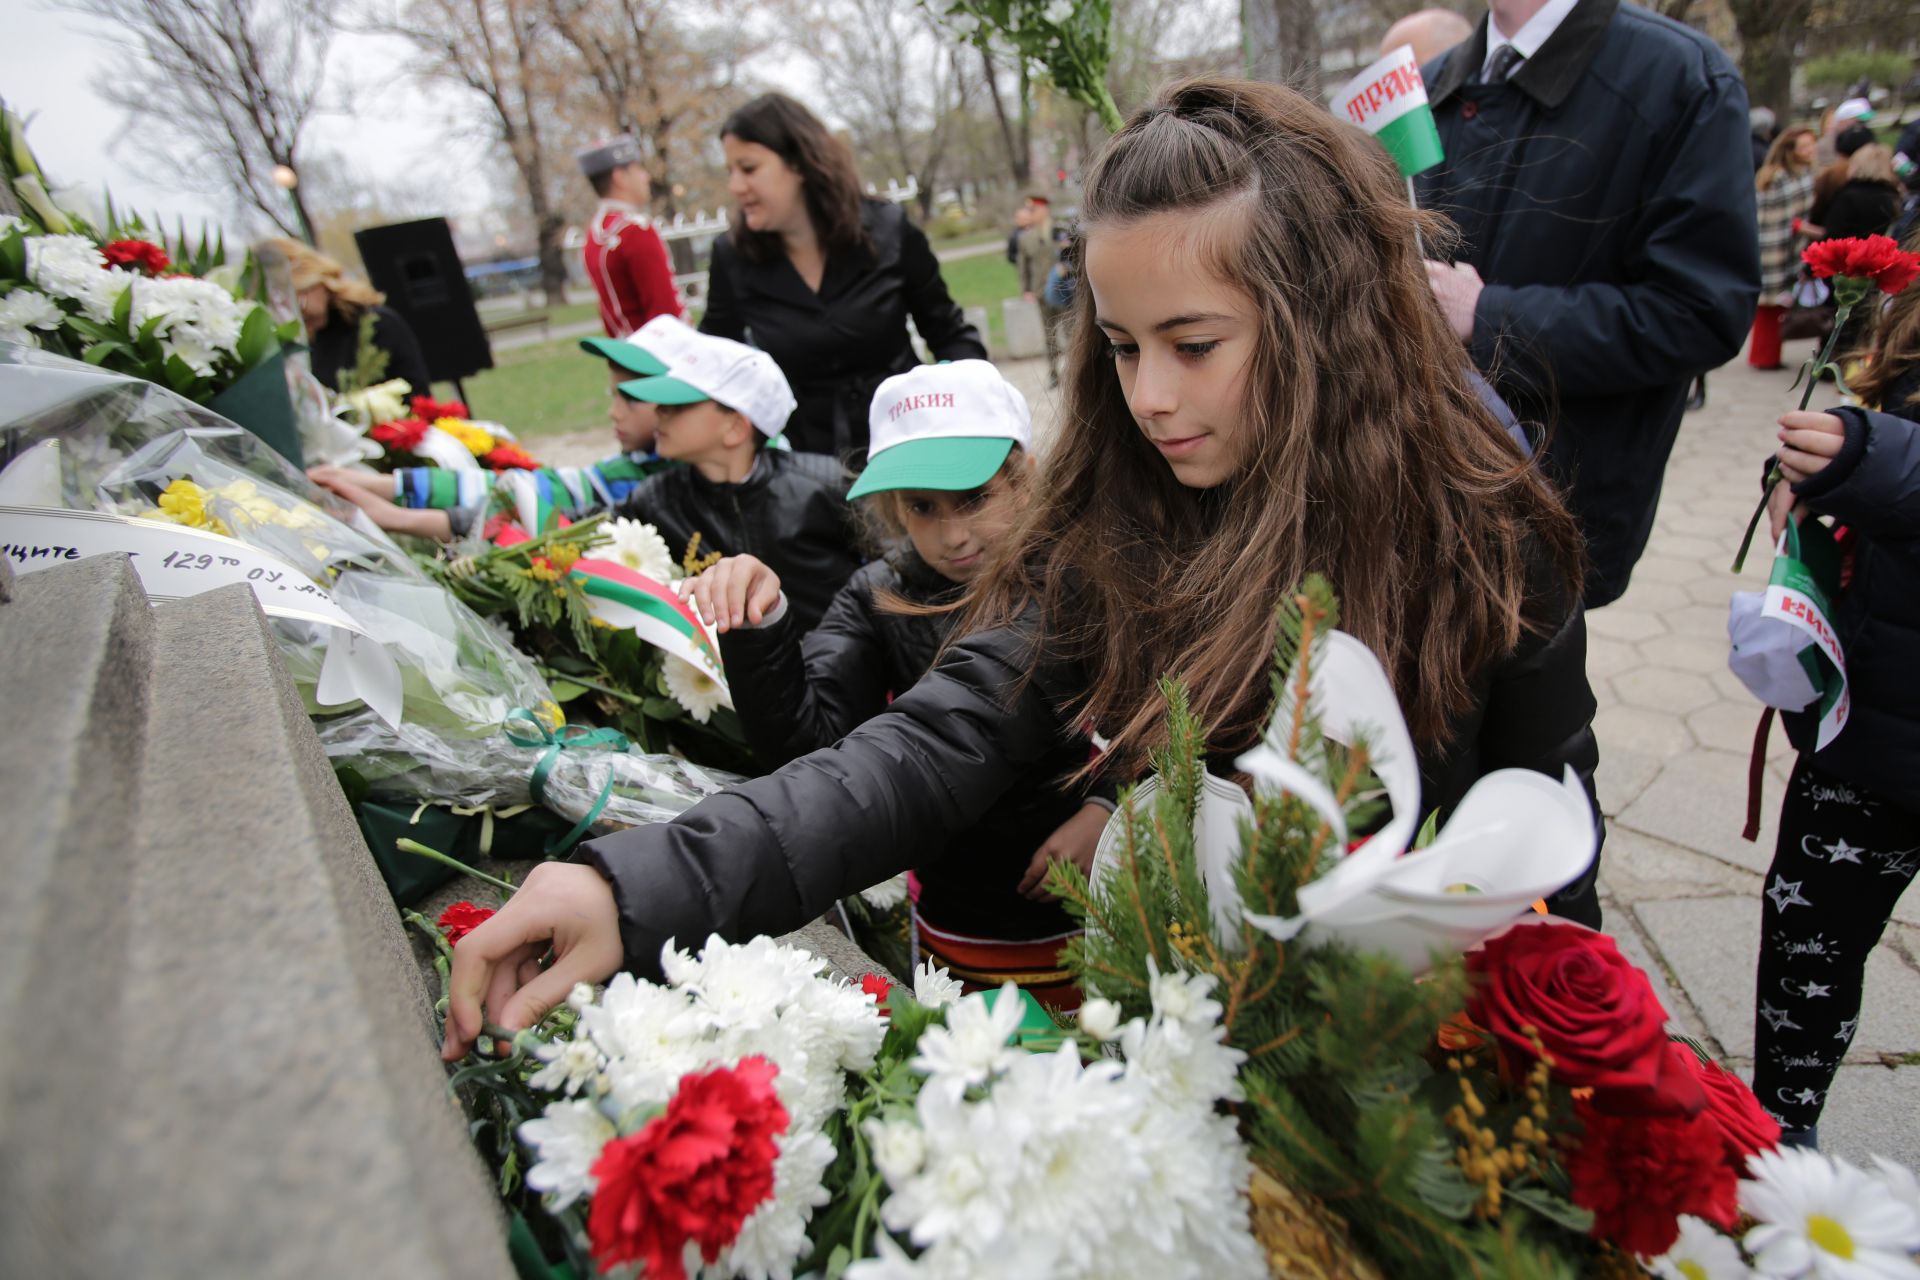  Пред паметникът "Одринска епопея" в столицата се проведе тържествено поклонение по повод Деня на Тракия и отбелязване на 106 години от Одринската епопея